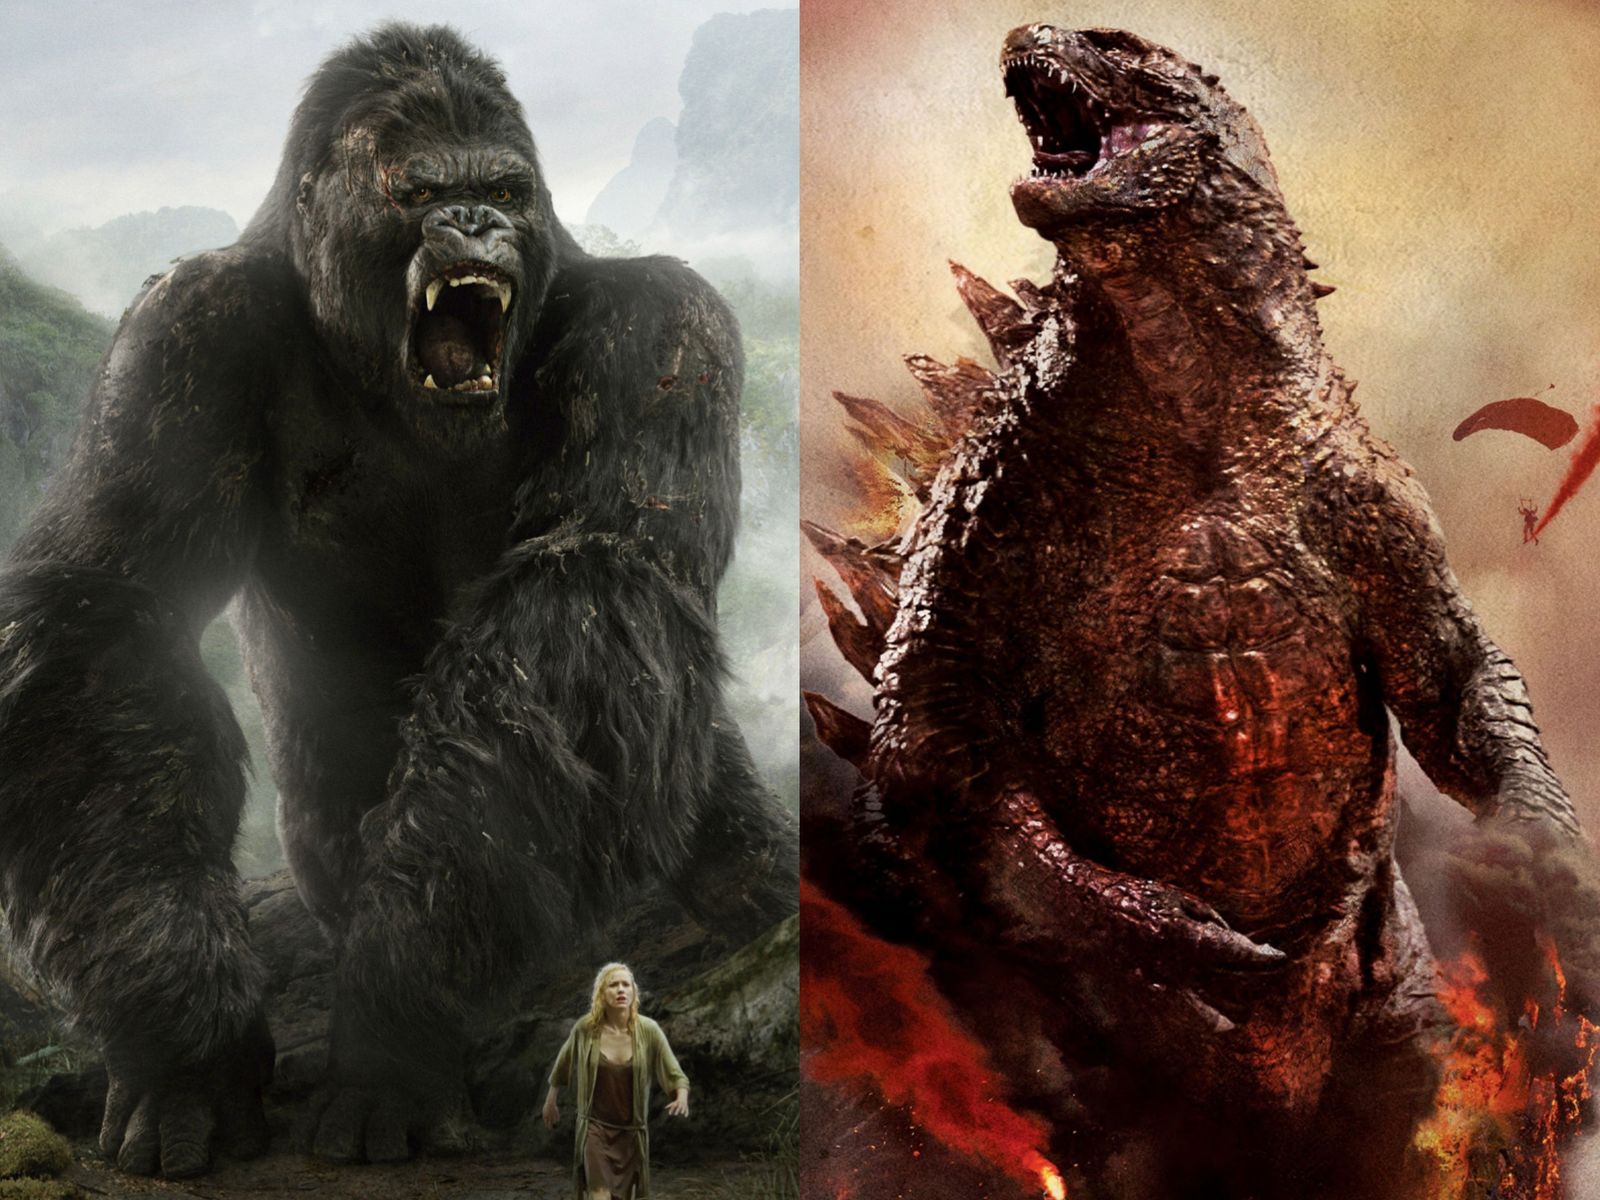 Godzilla vs. Kong Release Date Announced, Godzilla 2 Pushed Back